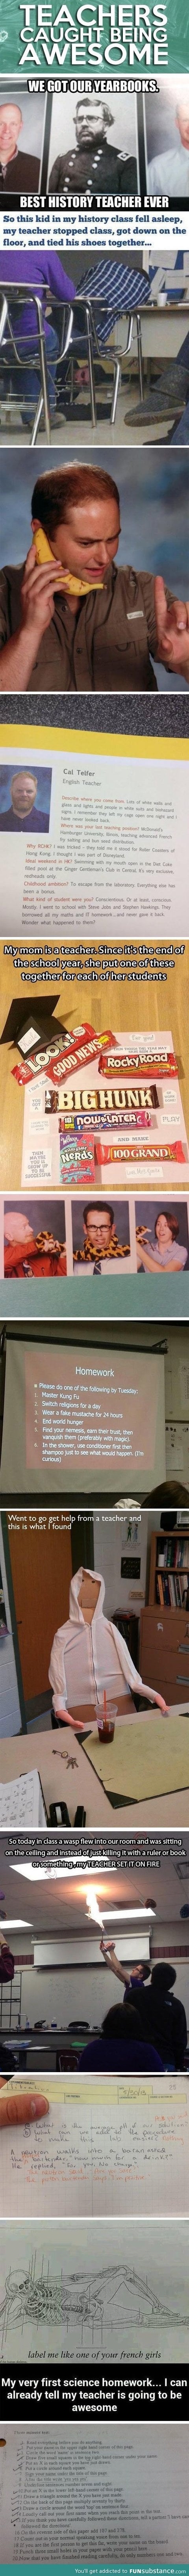 Awesome teachers